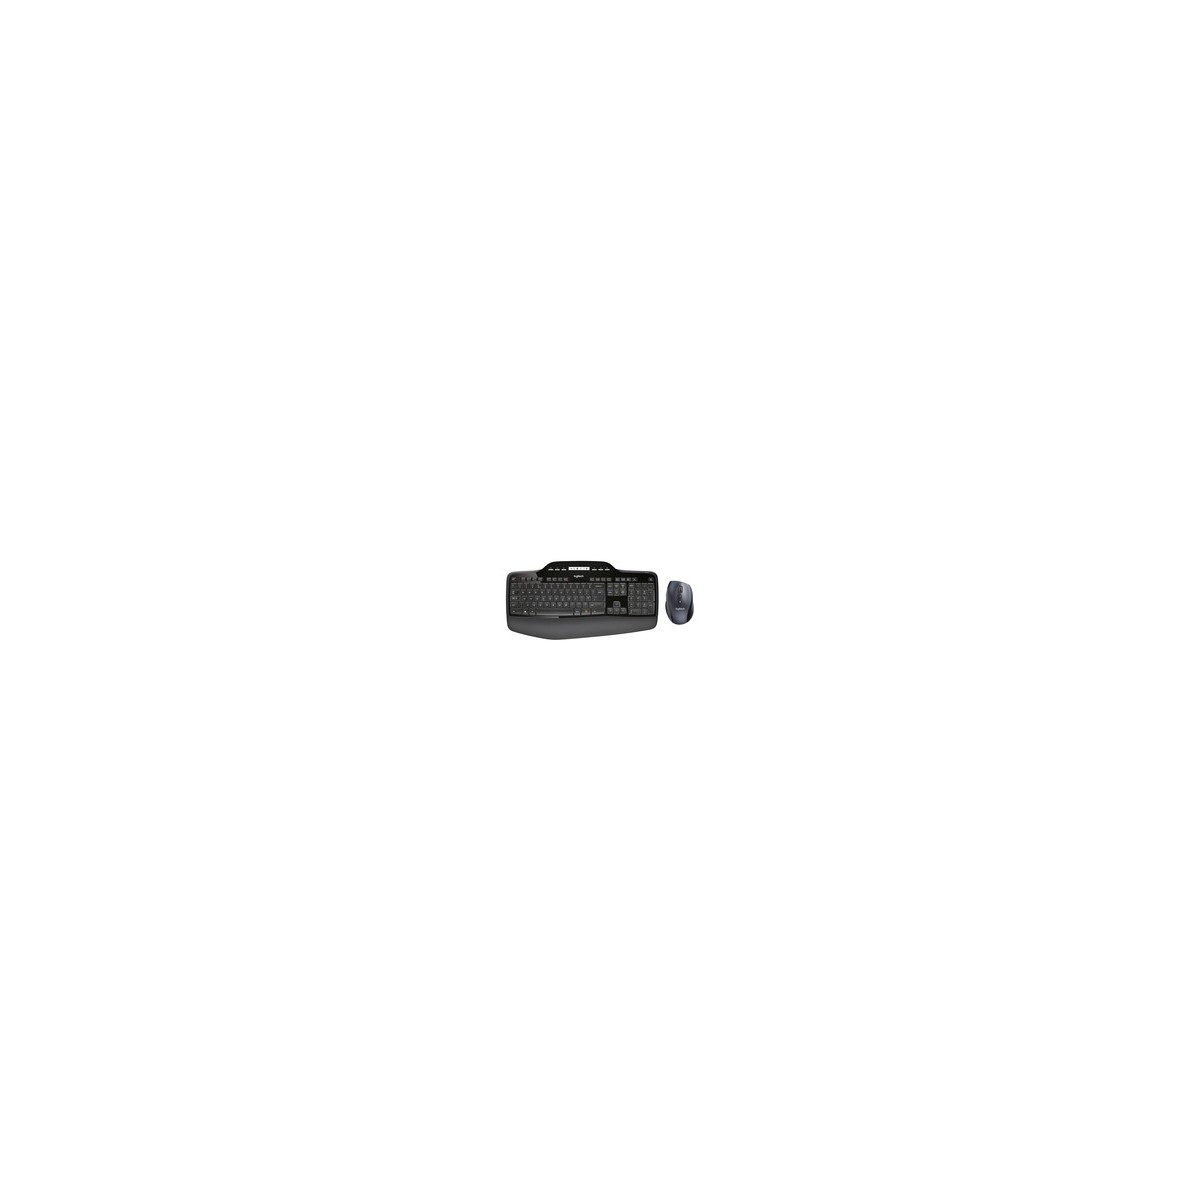 Logitech Wireless Desktop MK710 - Full-size (100%) - Wireless - RF Wireless - QWERTY - Black - Mouse included